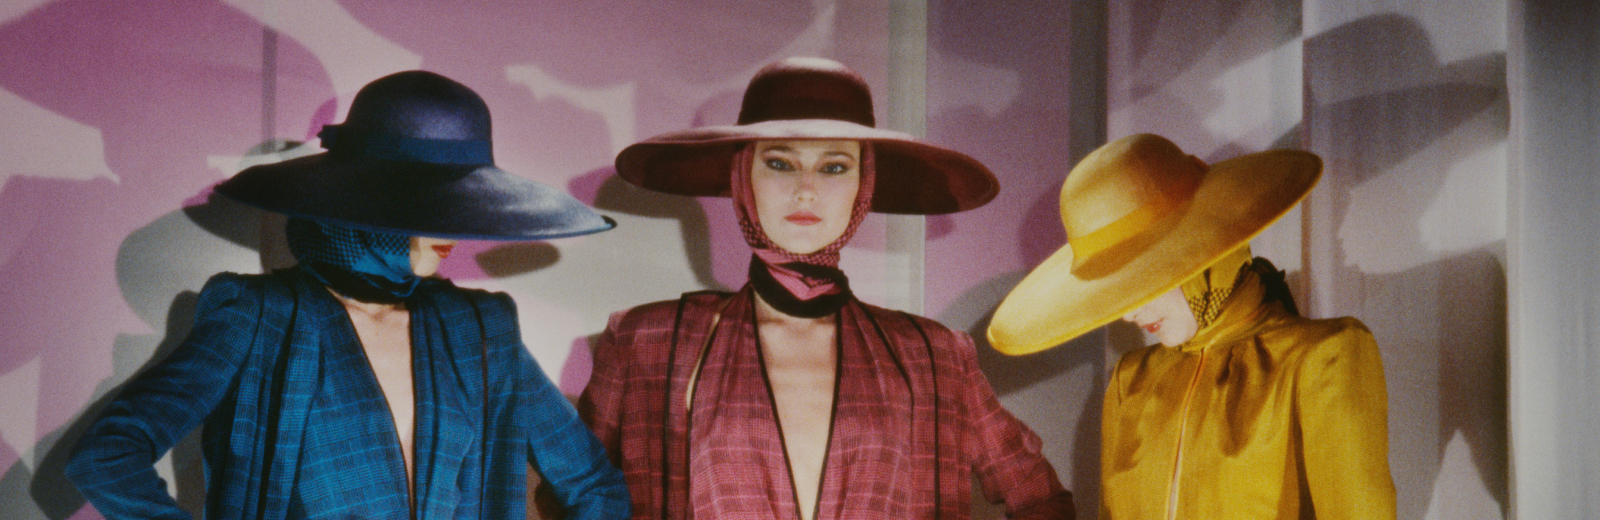 Alberta Tiburzi. A Brilliant Epoch. Italian Fashion of the 1980s